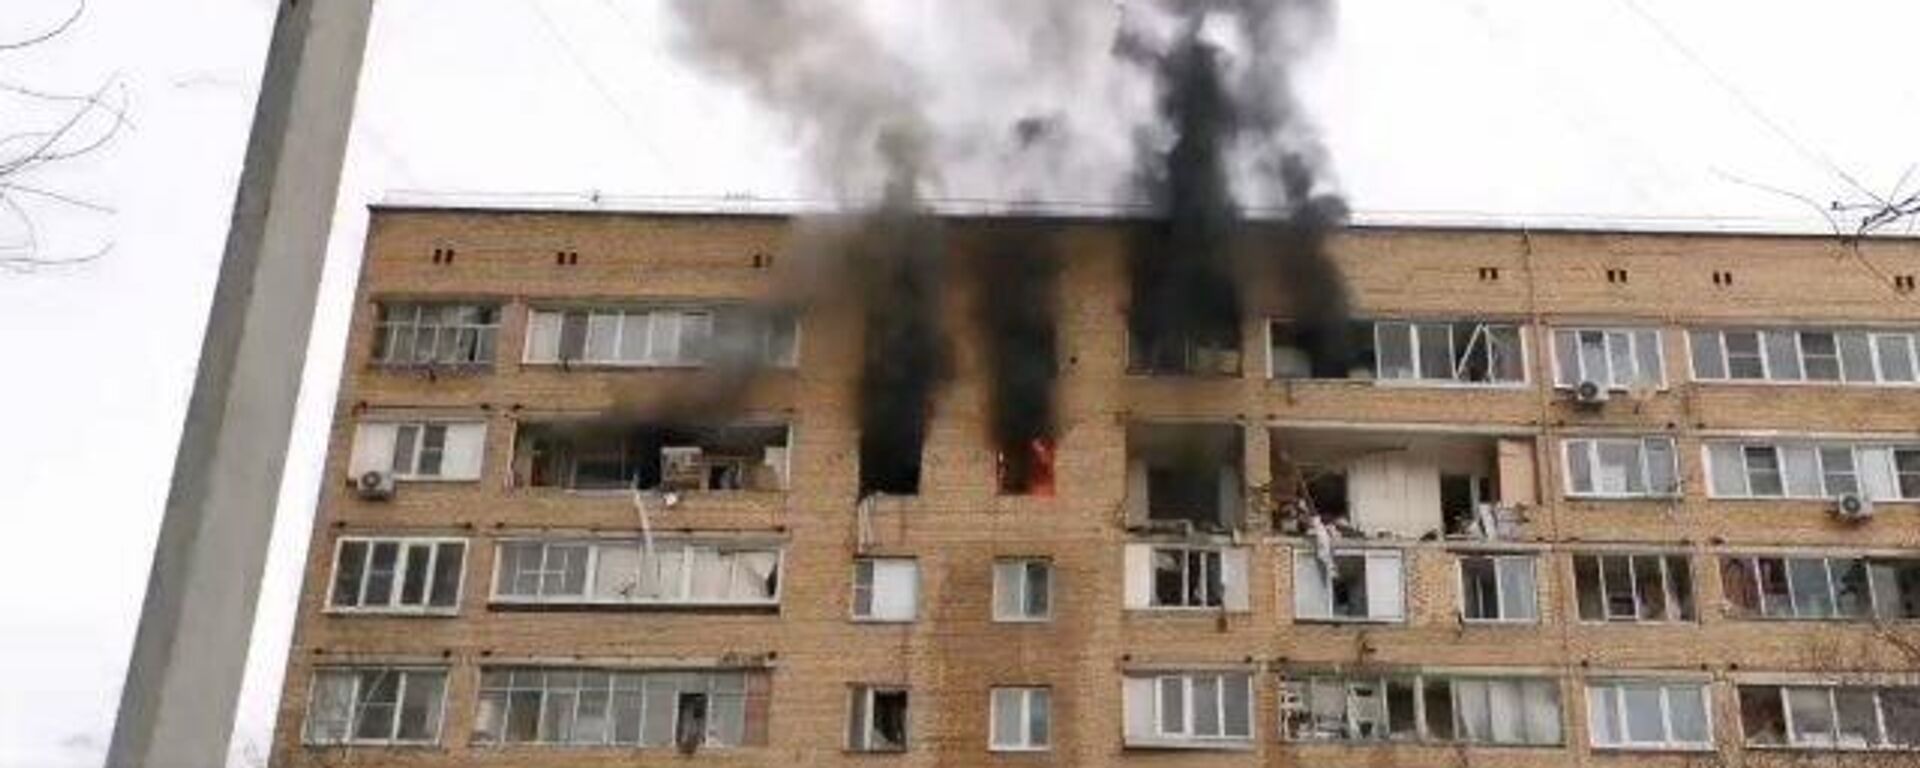 Un incendio tras una explosión de gas en un edificio residencial de nueve plantas en la ciudad rusa de Jimki - Sputnik Mundo, 1920, 19.03.2021